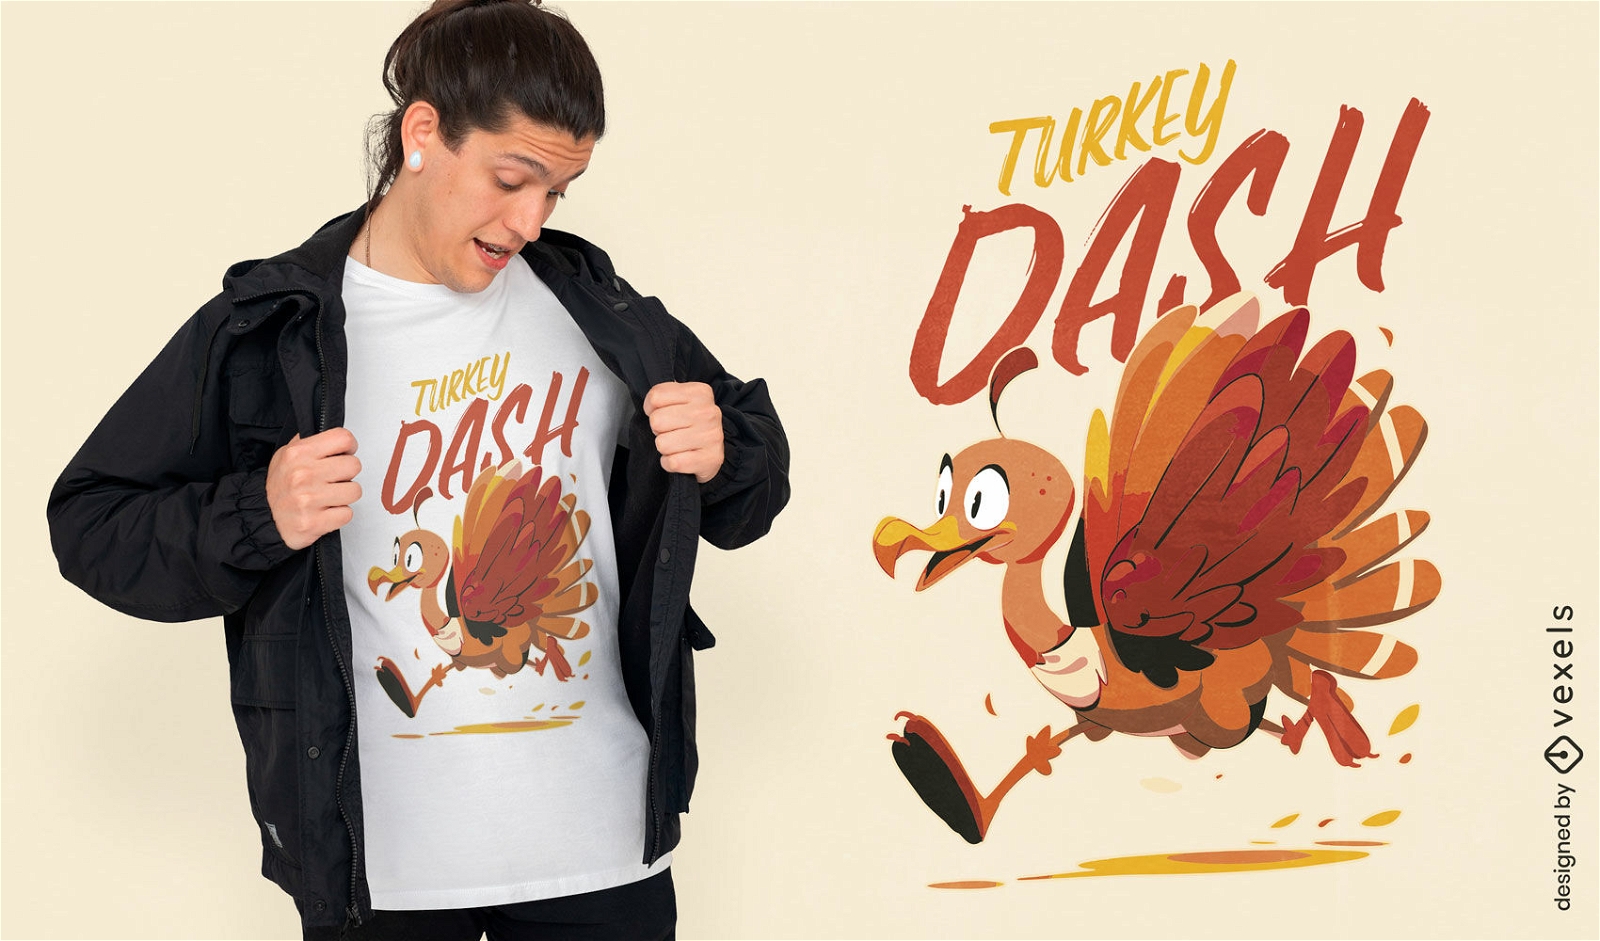 Turkey dash thanksgiving t-shirt design